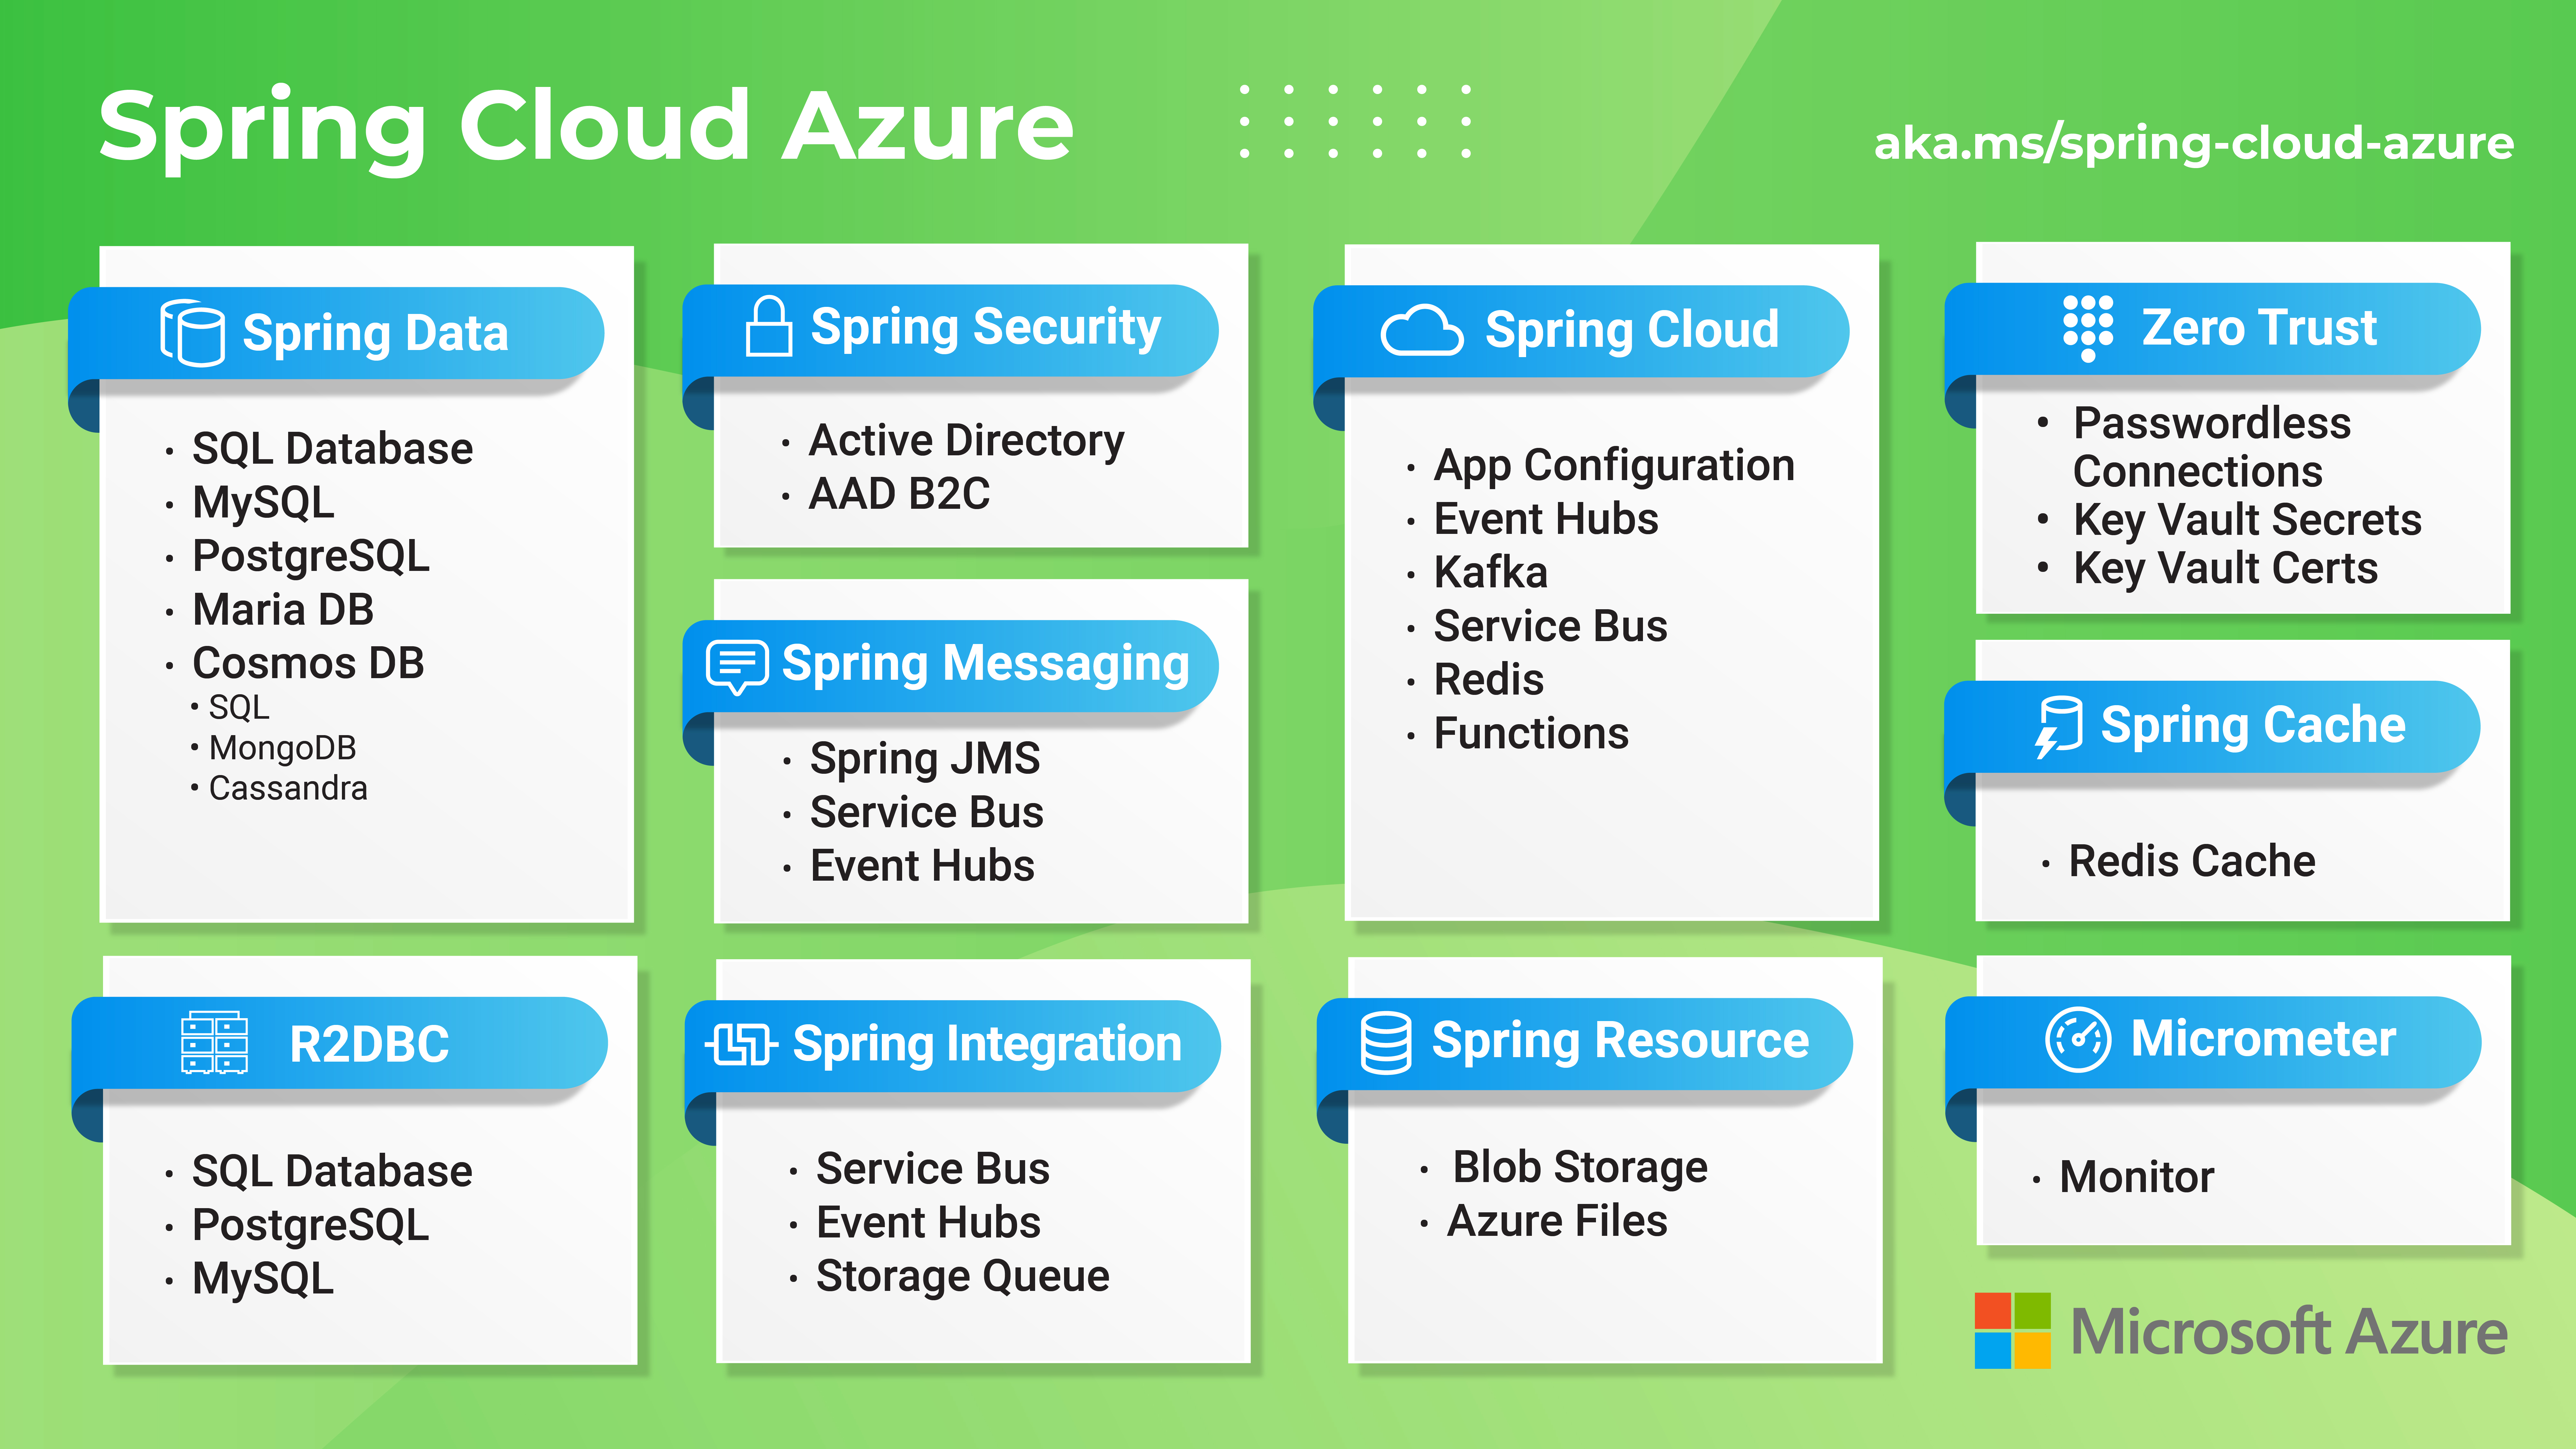 Diagrama que proporciona información general sobre las características de Azure de Spring Cloud.